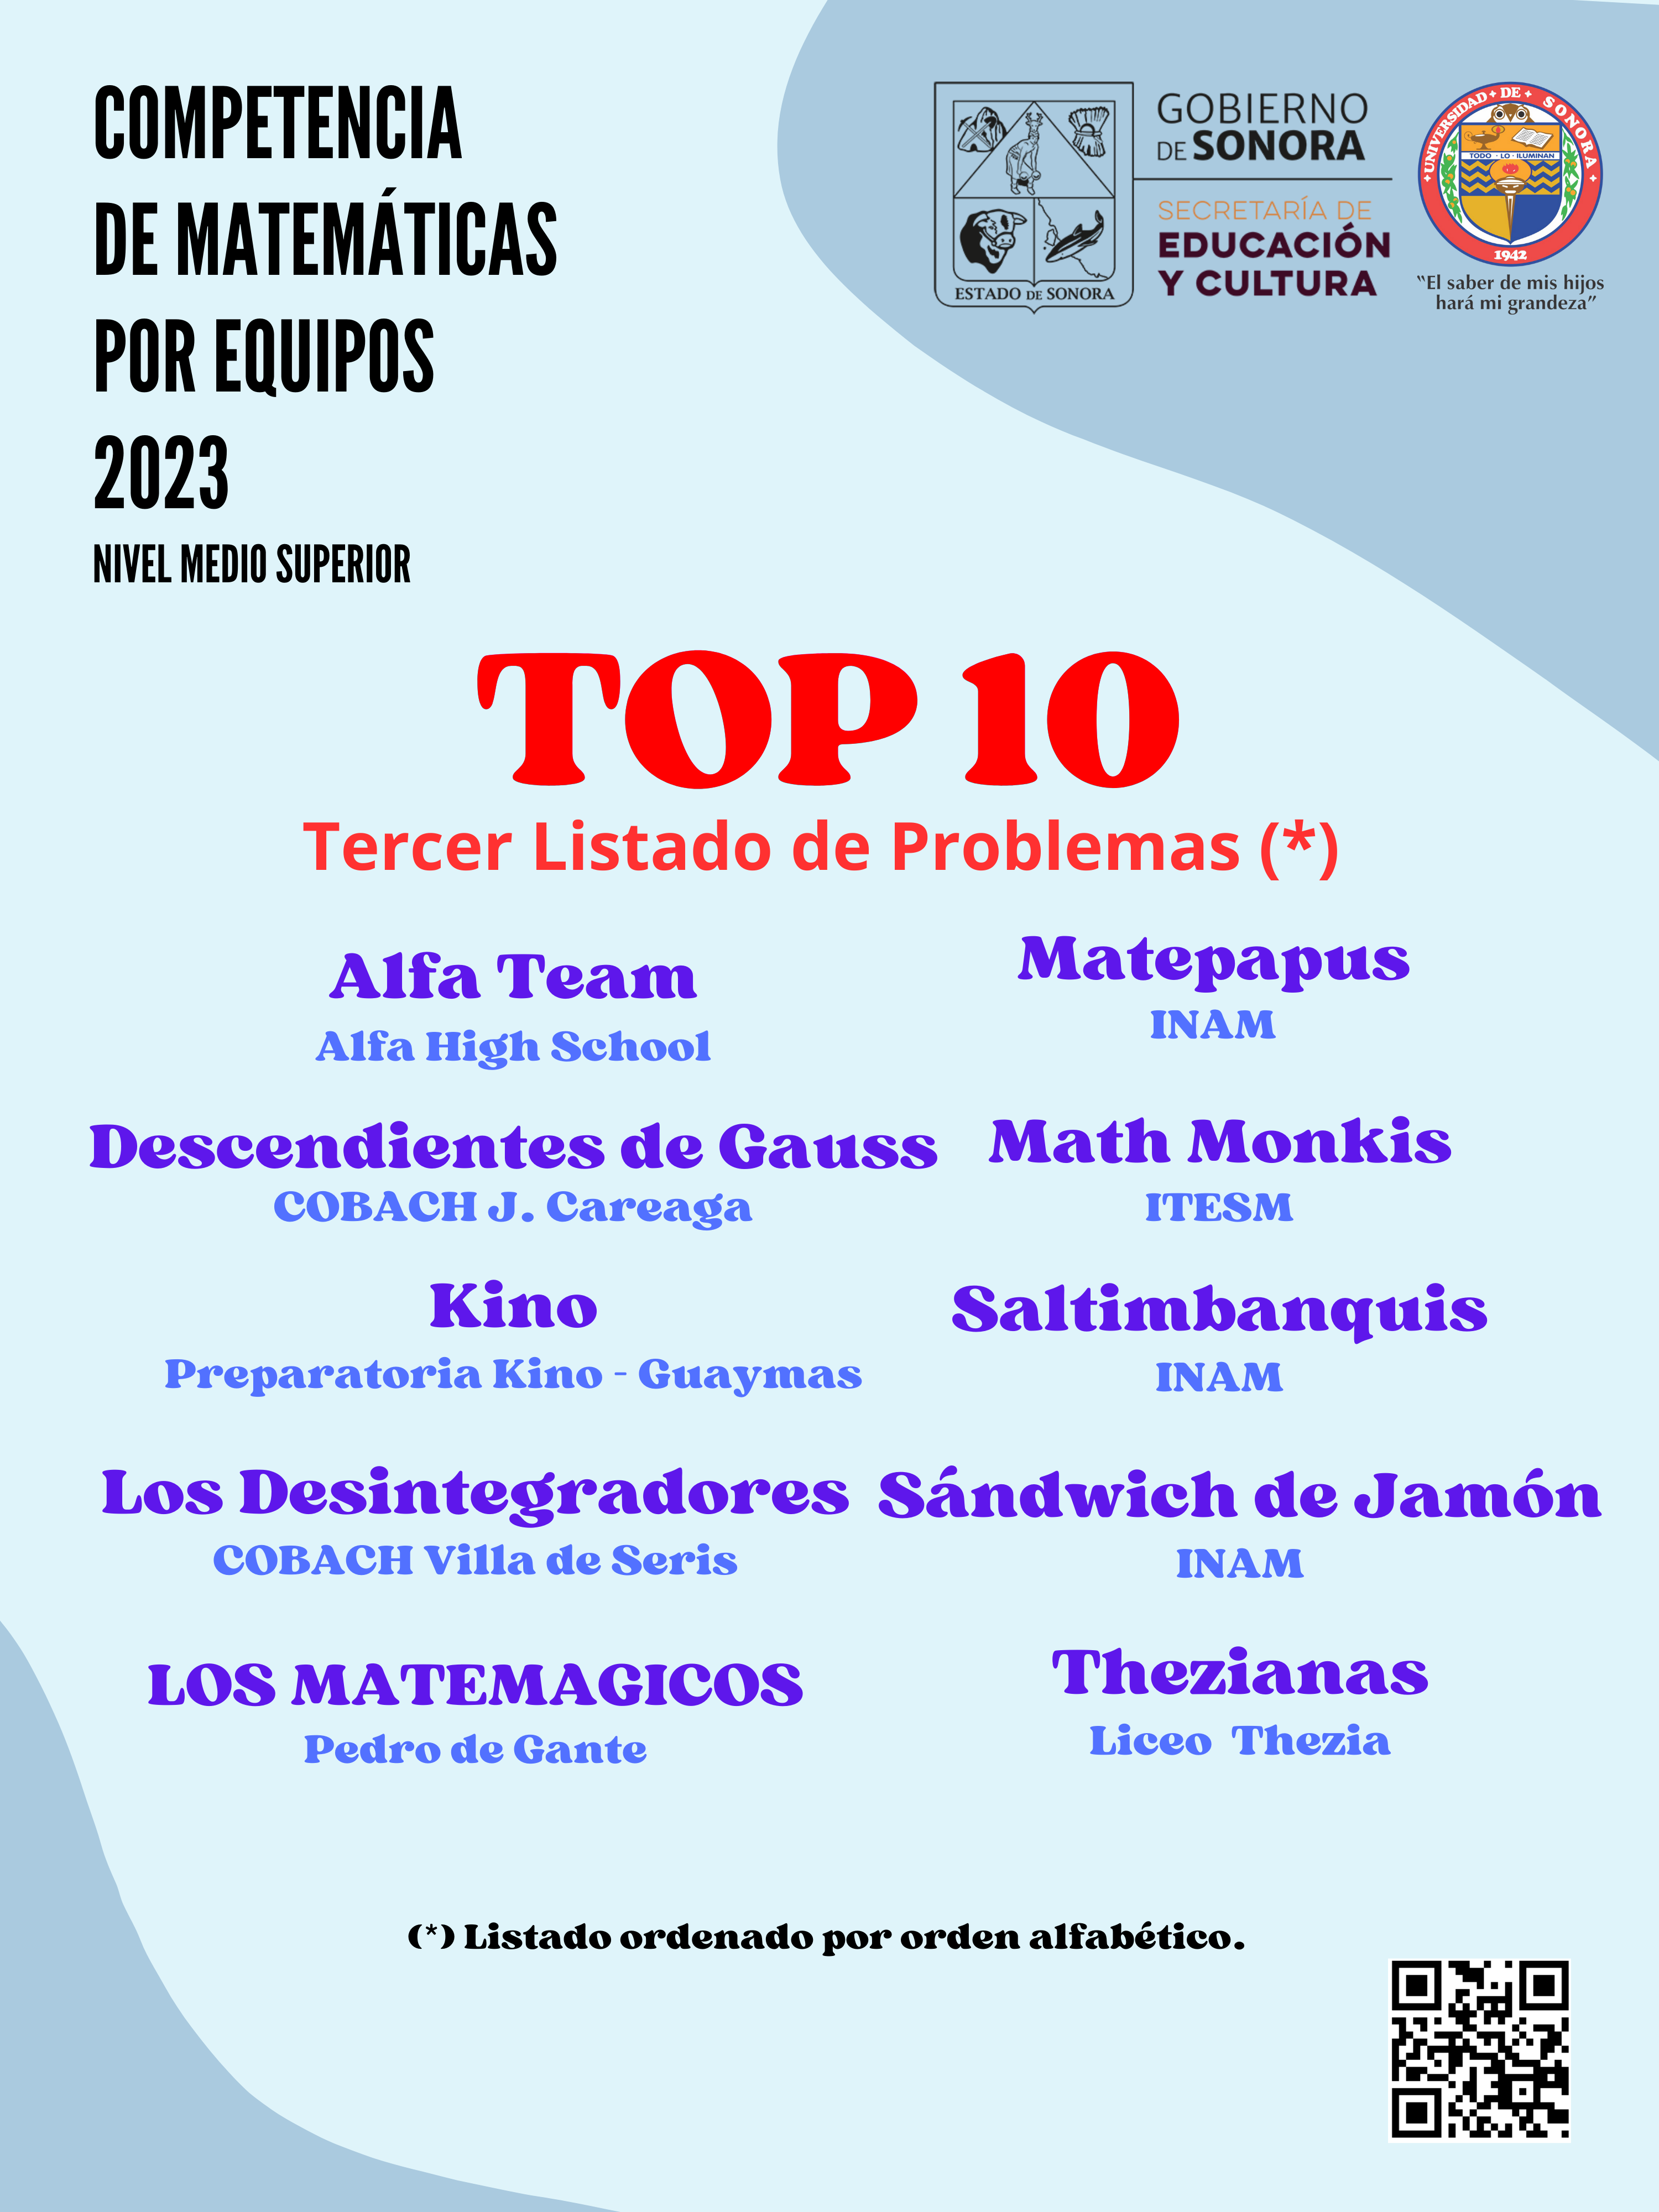 Top 10 tercera lista de problemas